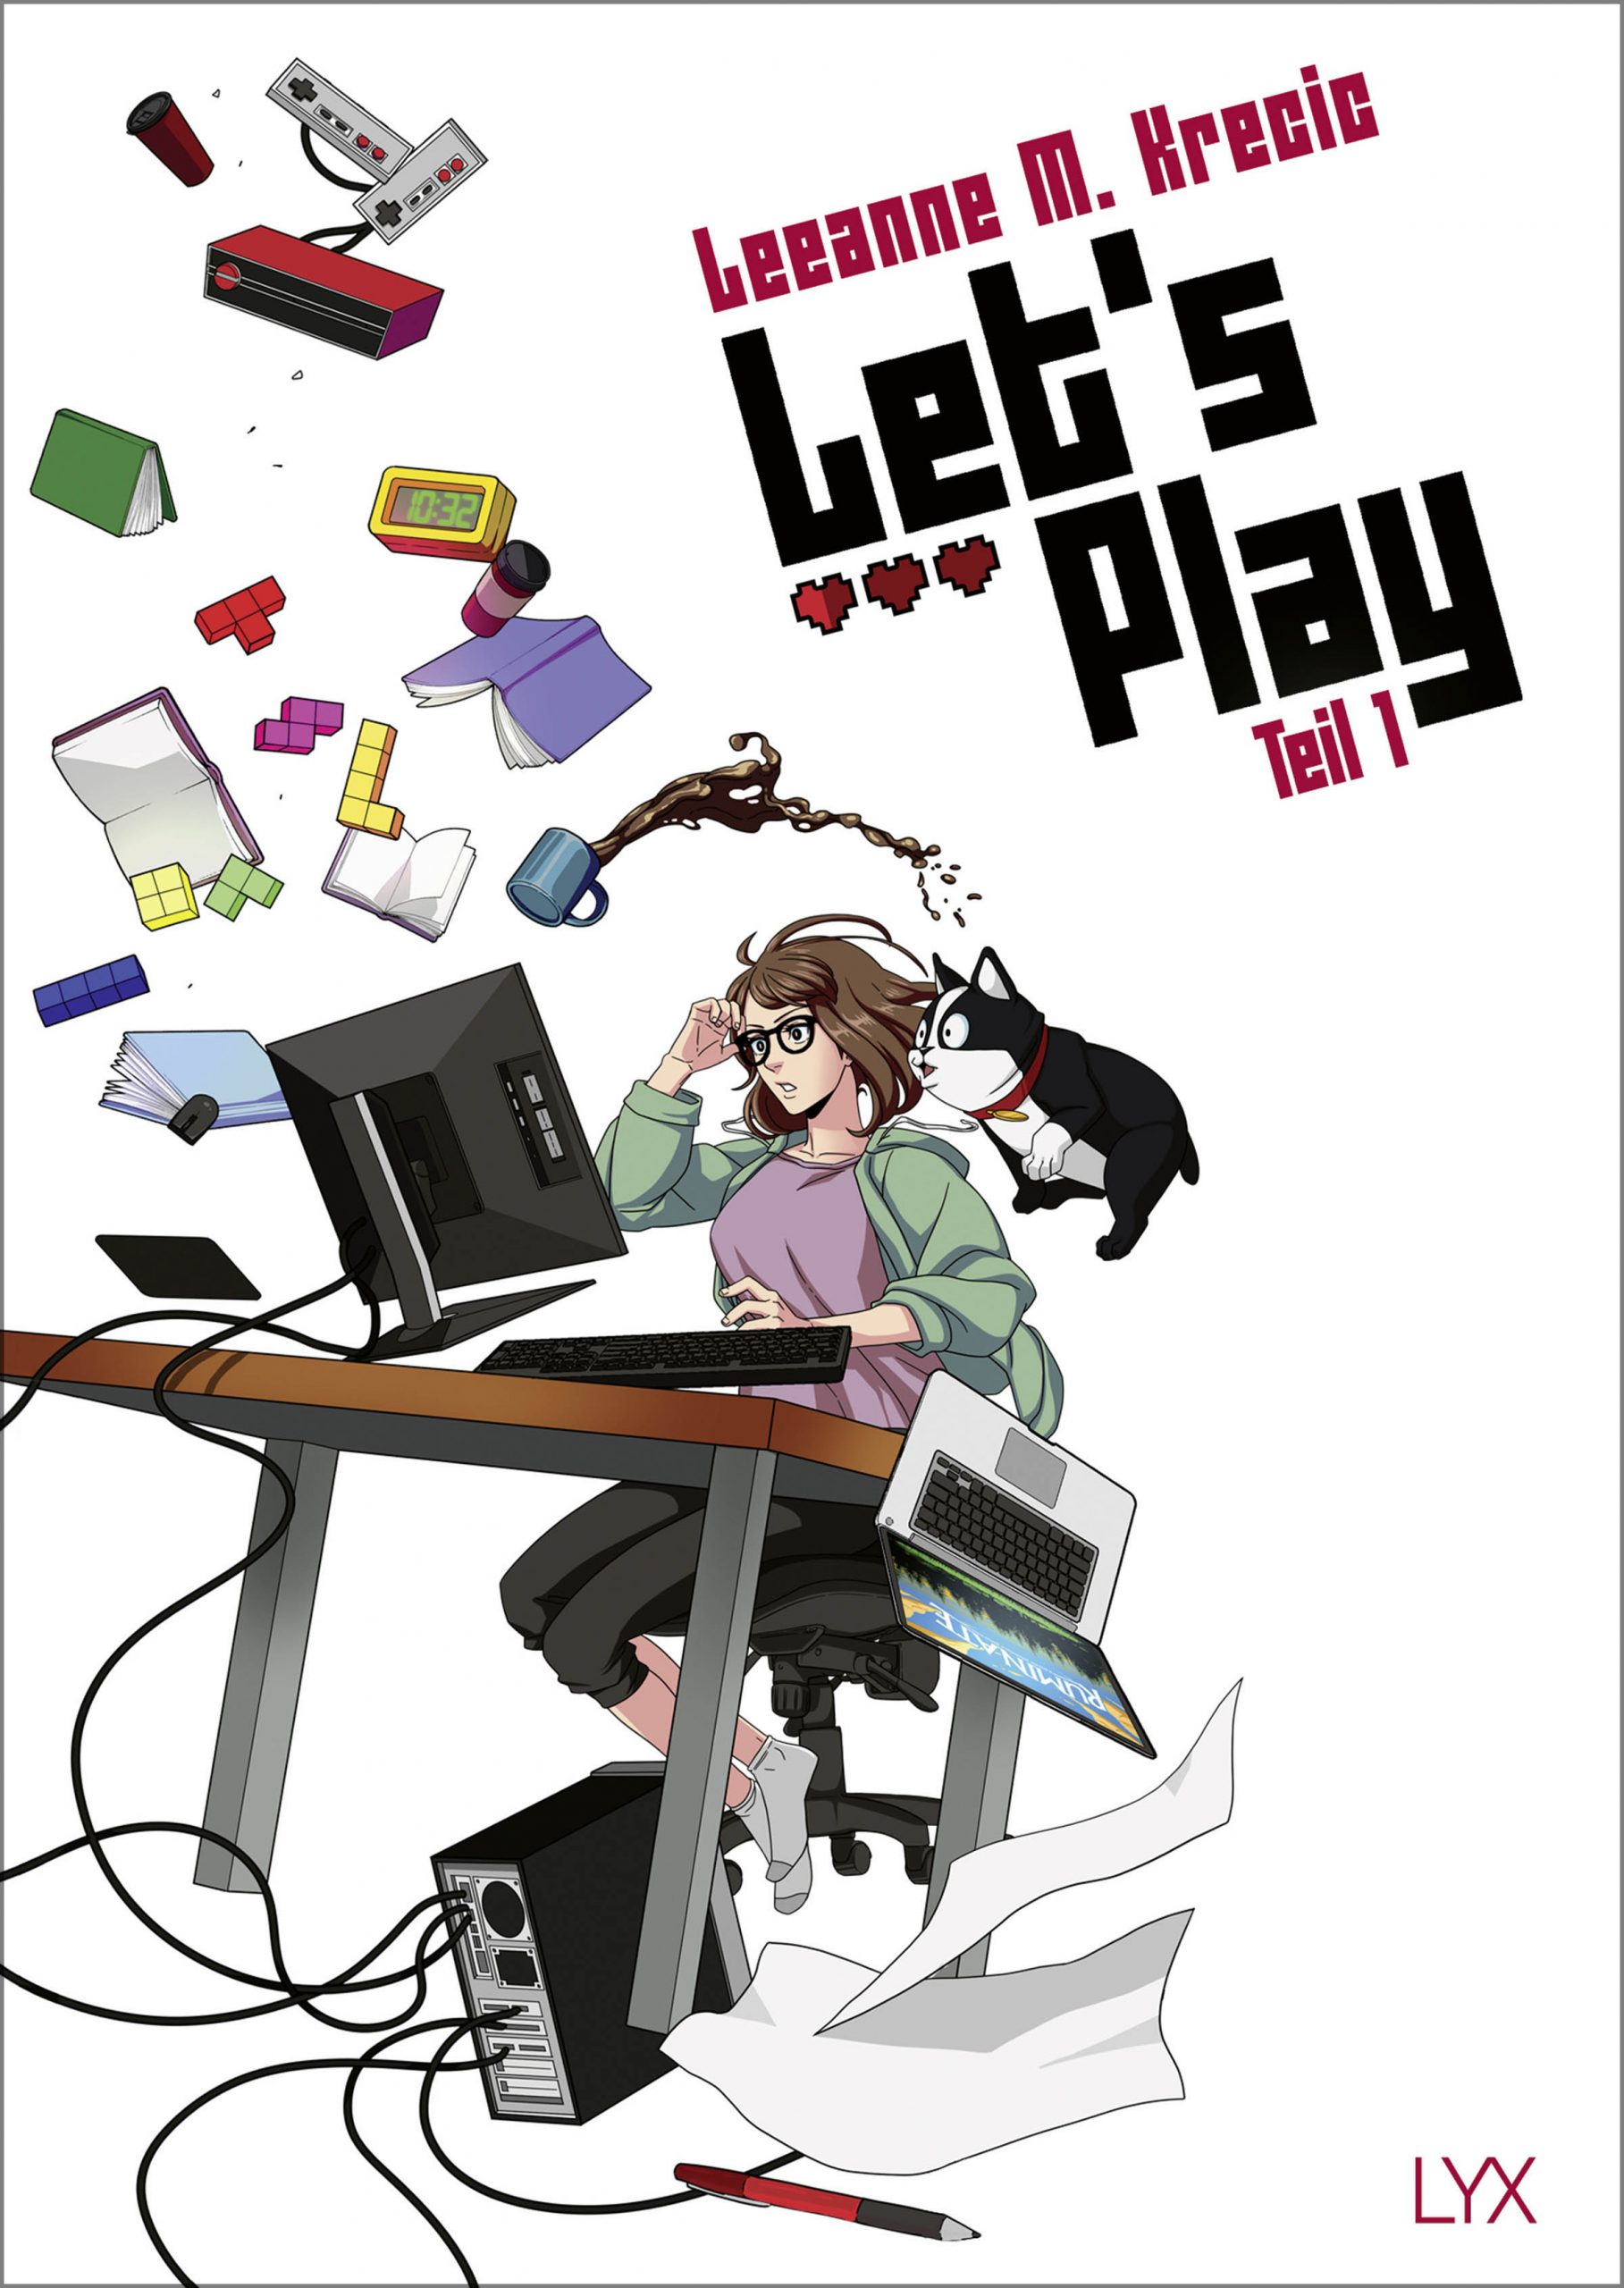 Let's Play - Teil 1 by Leeanne M. Krecic